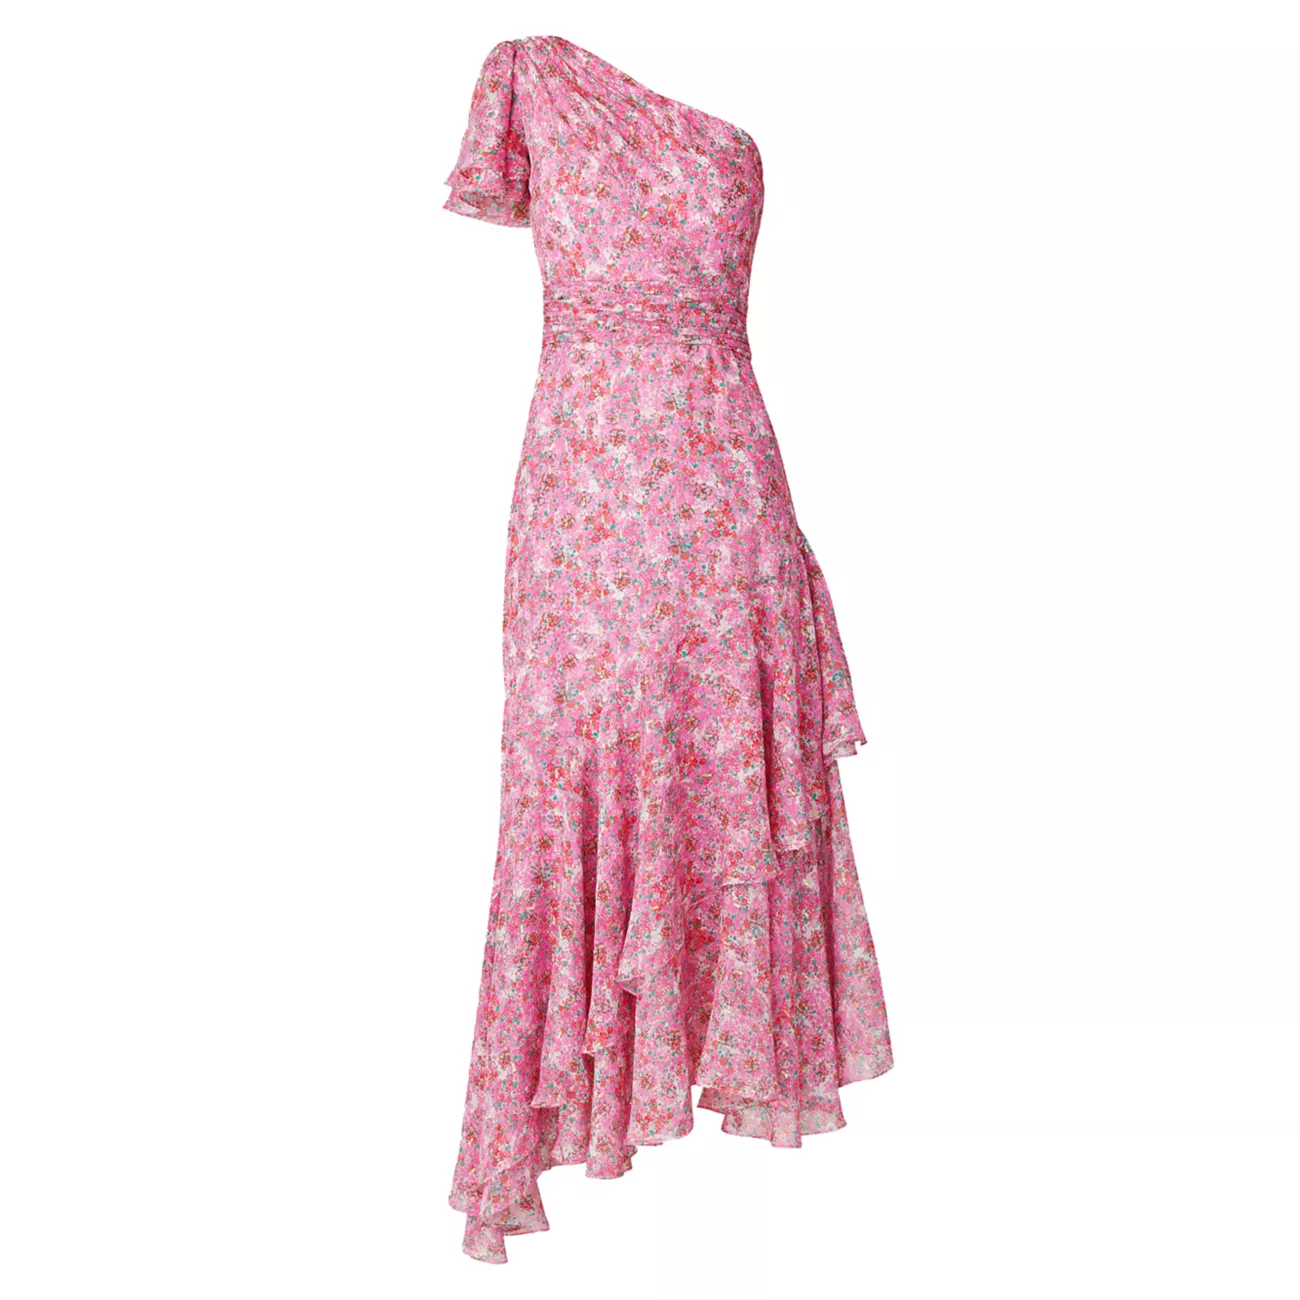 Шифоновое платье макси Melody с цветочным принтом Shoshanna